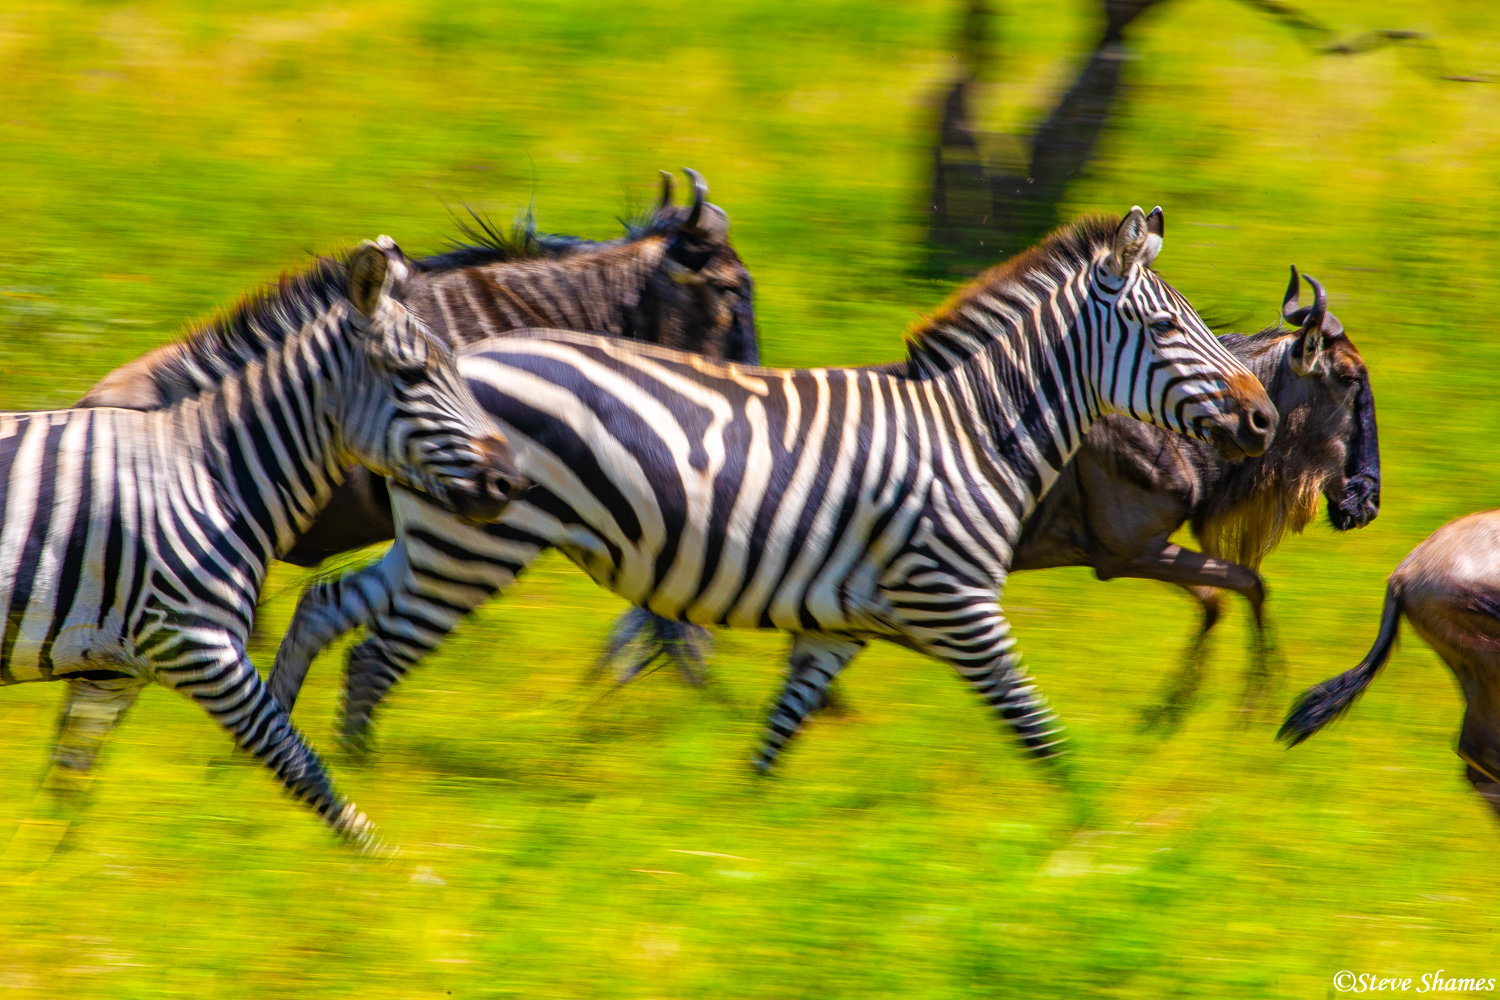 Action shot of running zebras!